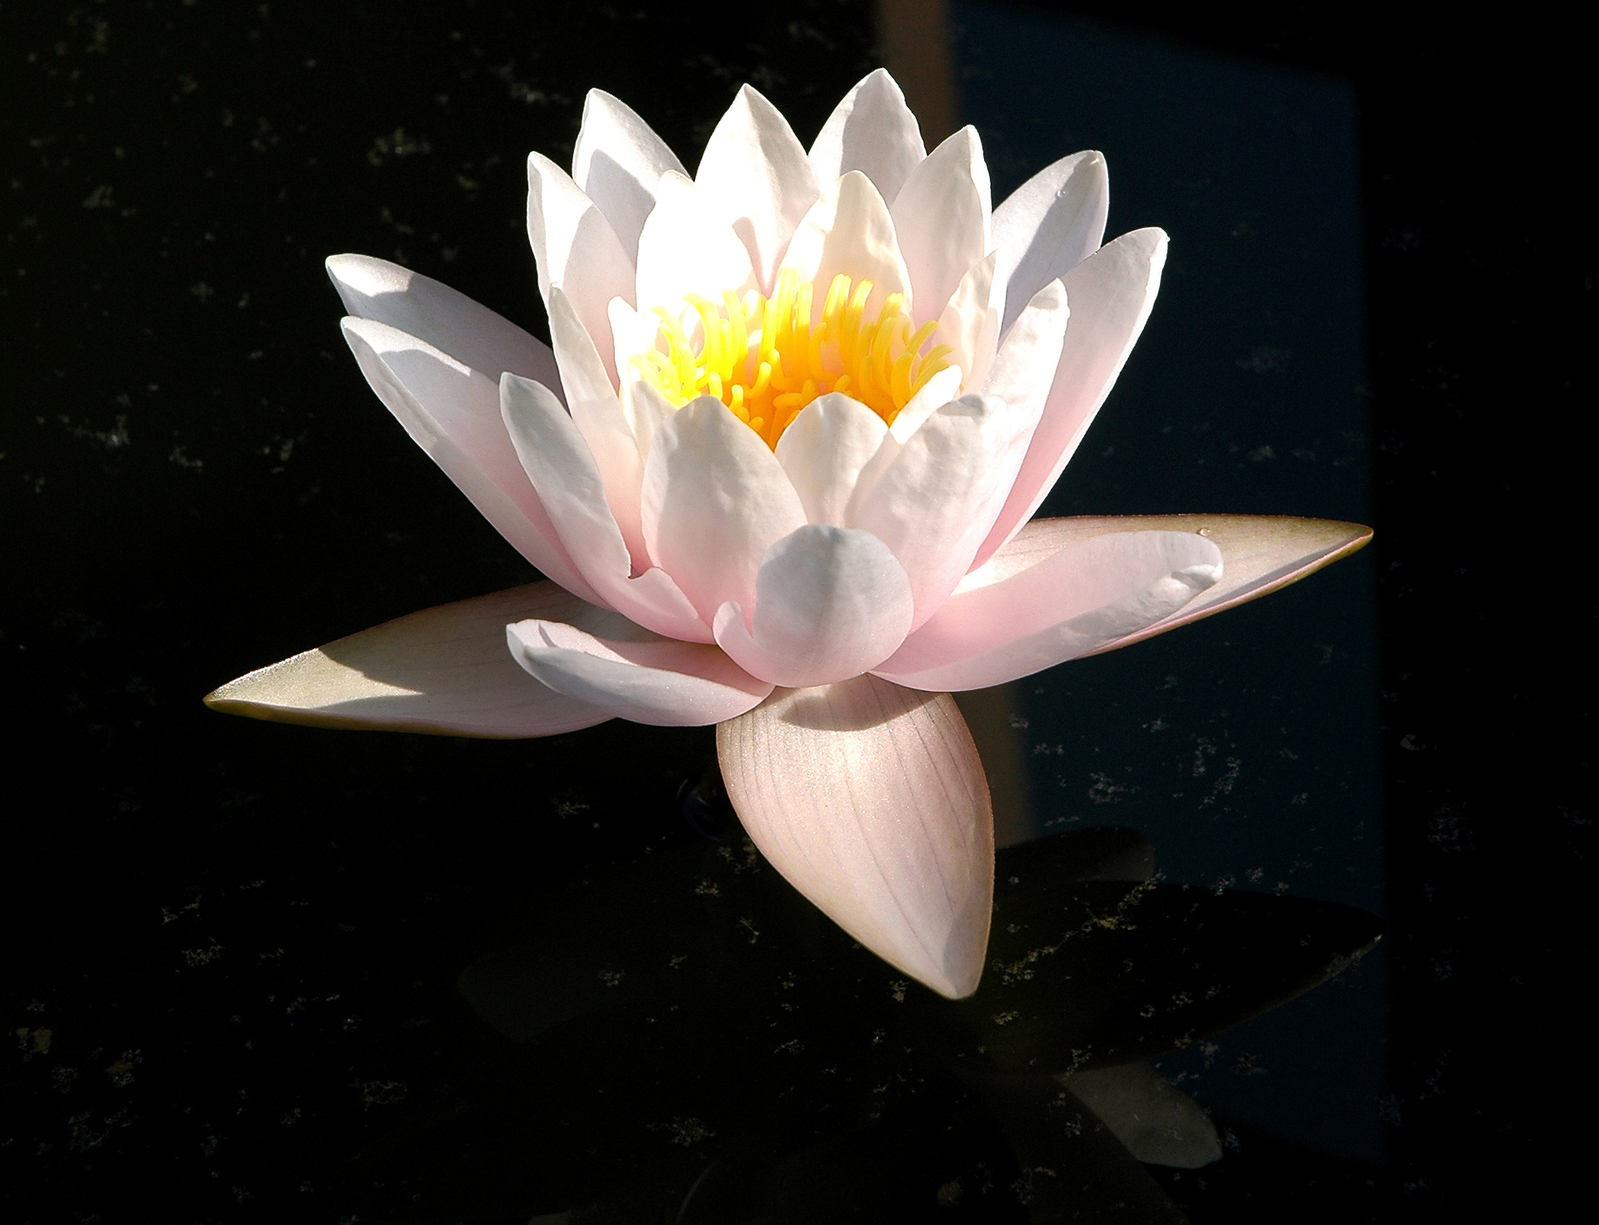 https://blog.prestigeflowers.co.uk/wp-content/uploads/sites/2/2018/05/lovely-lotus-1193670-1599x1224.jpg